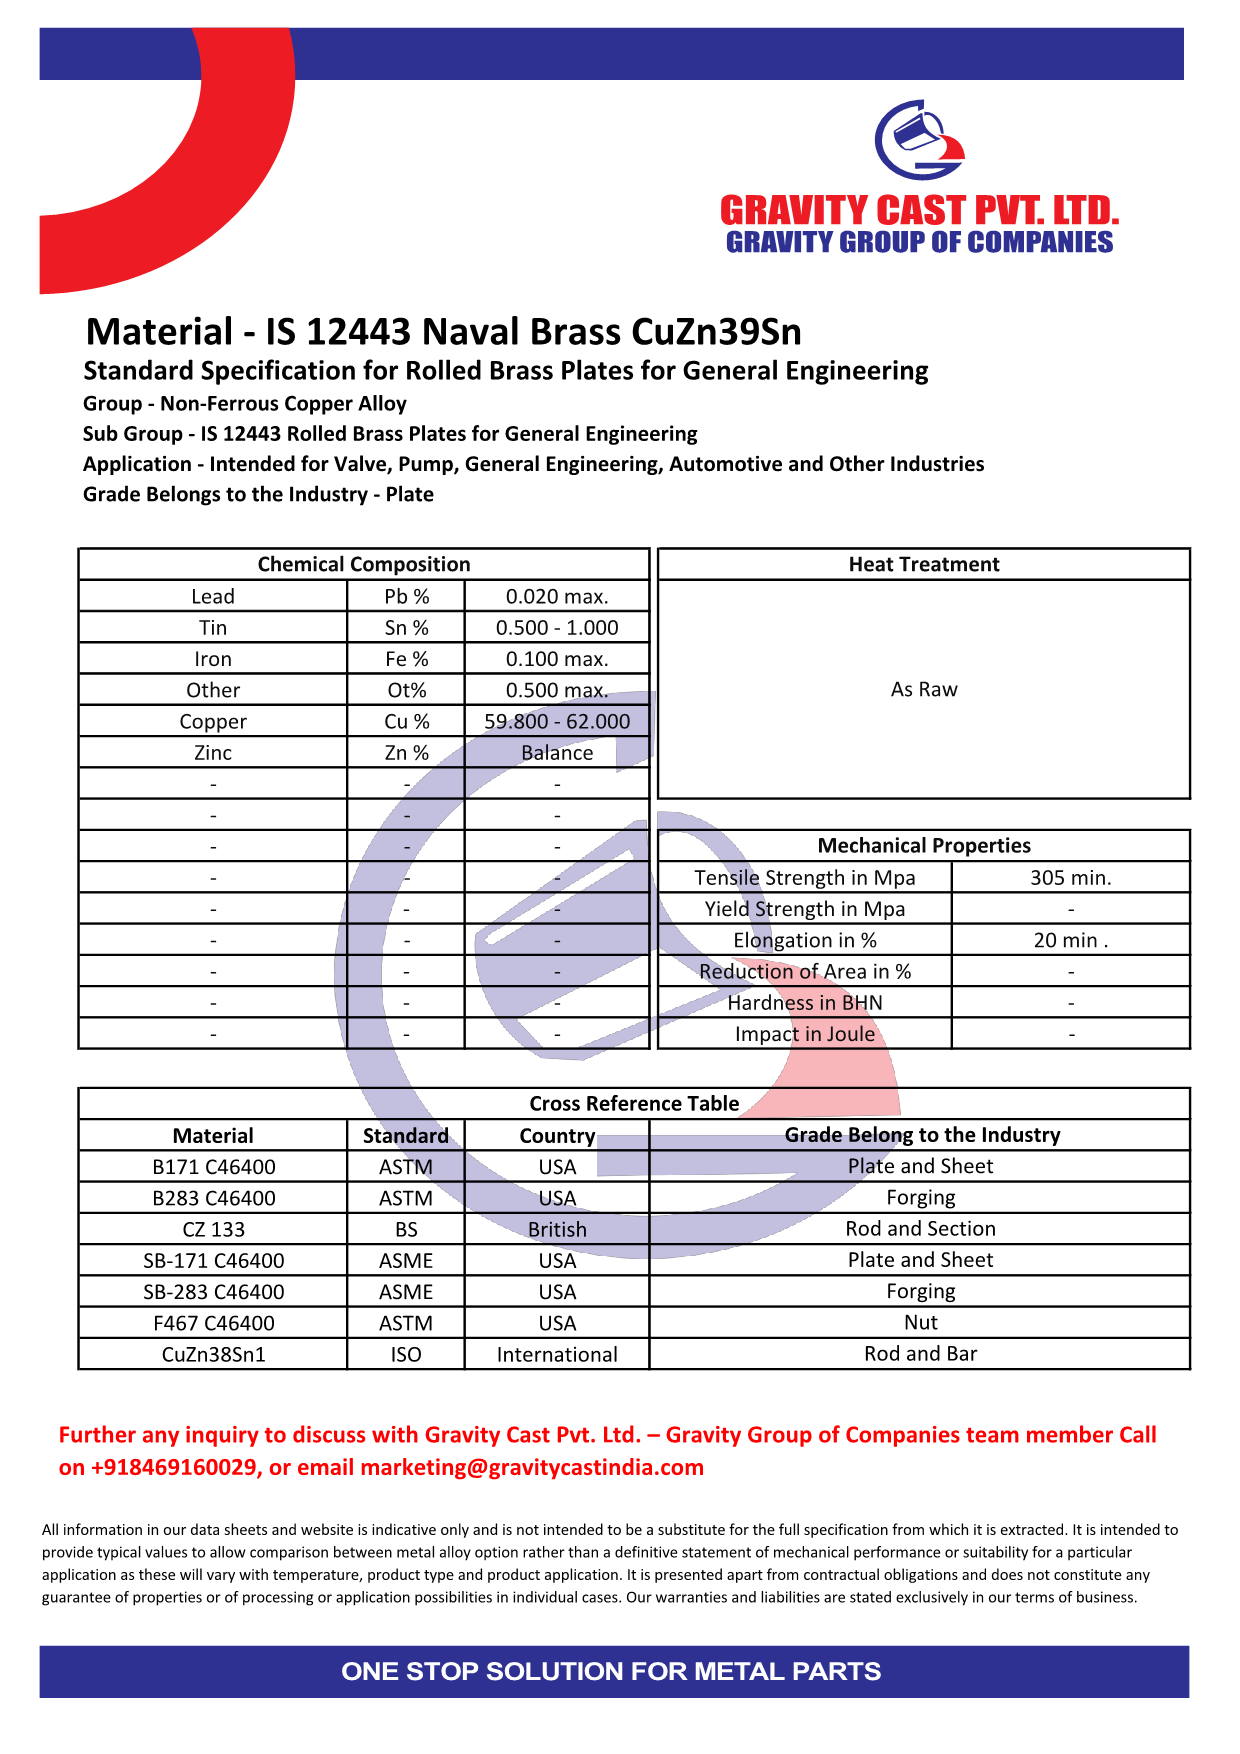 IS 12443 Naval Brass CuZn39Sn.pdf